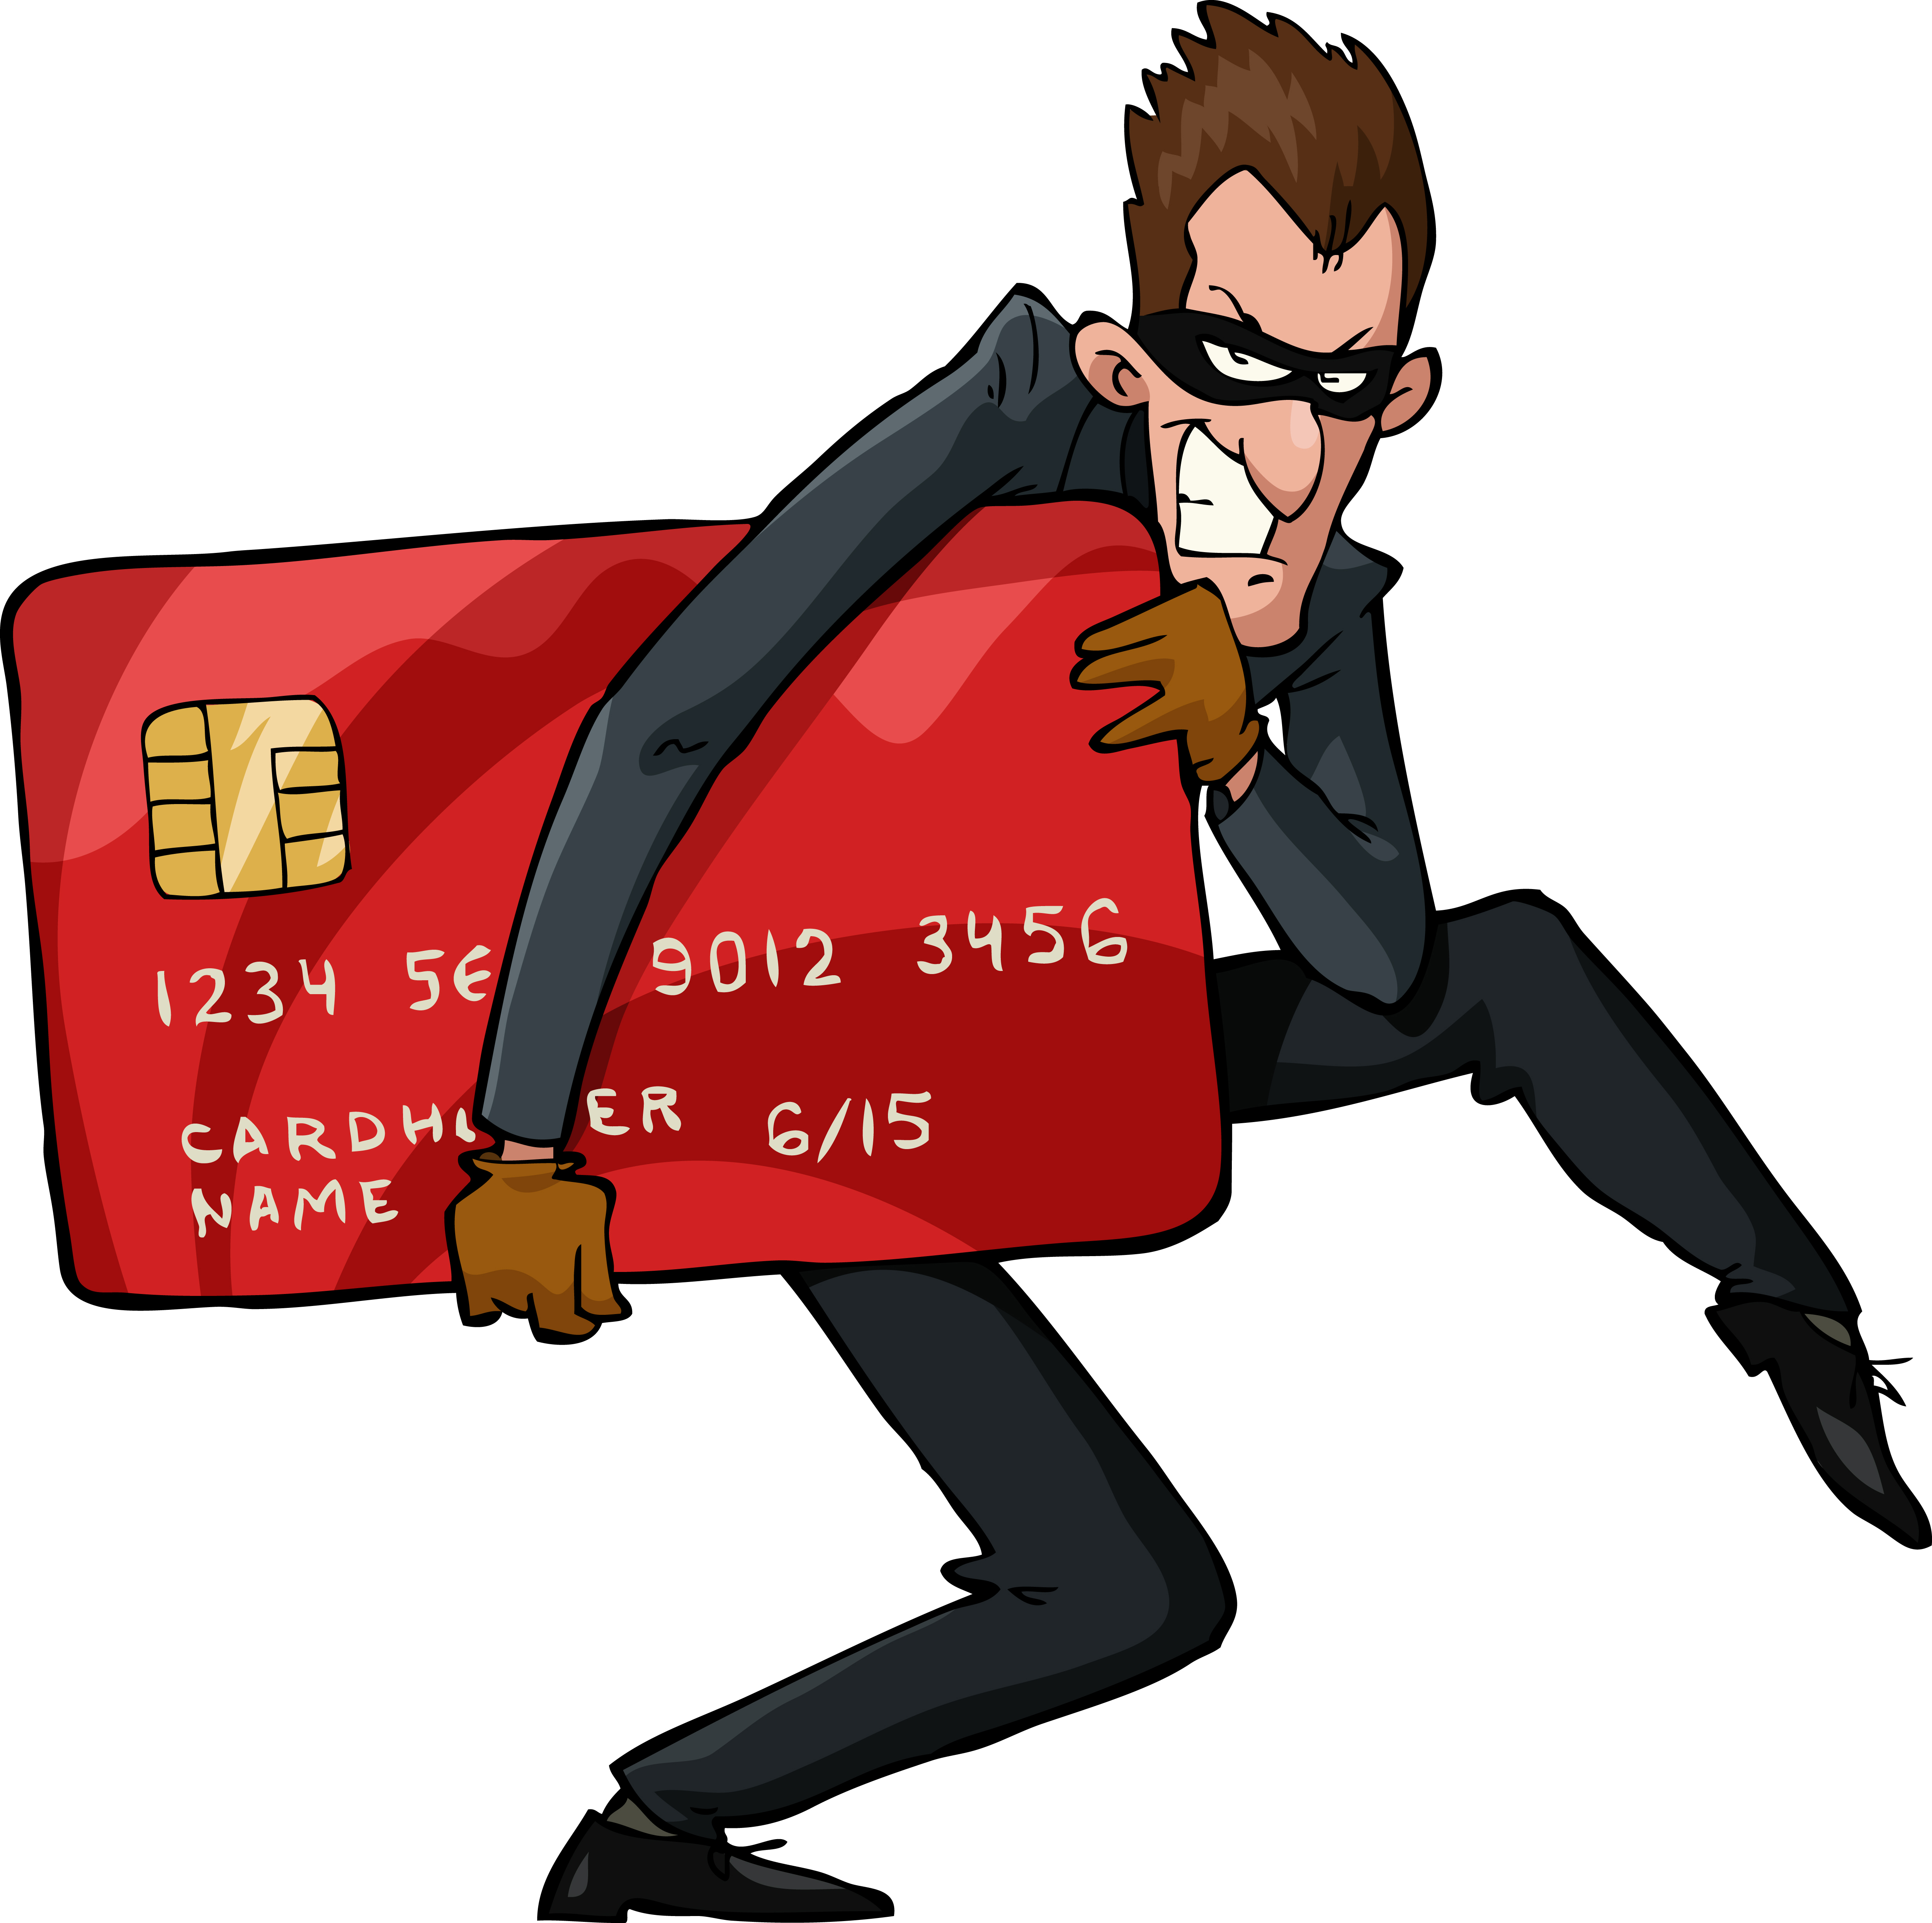 Deshaciendo mitos sobre las tarjetas de crédito